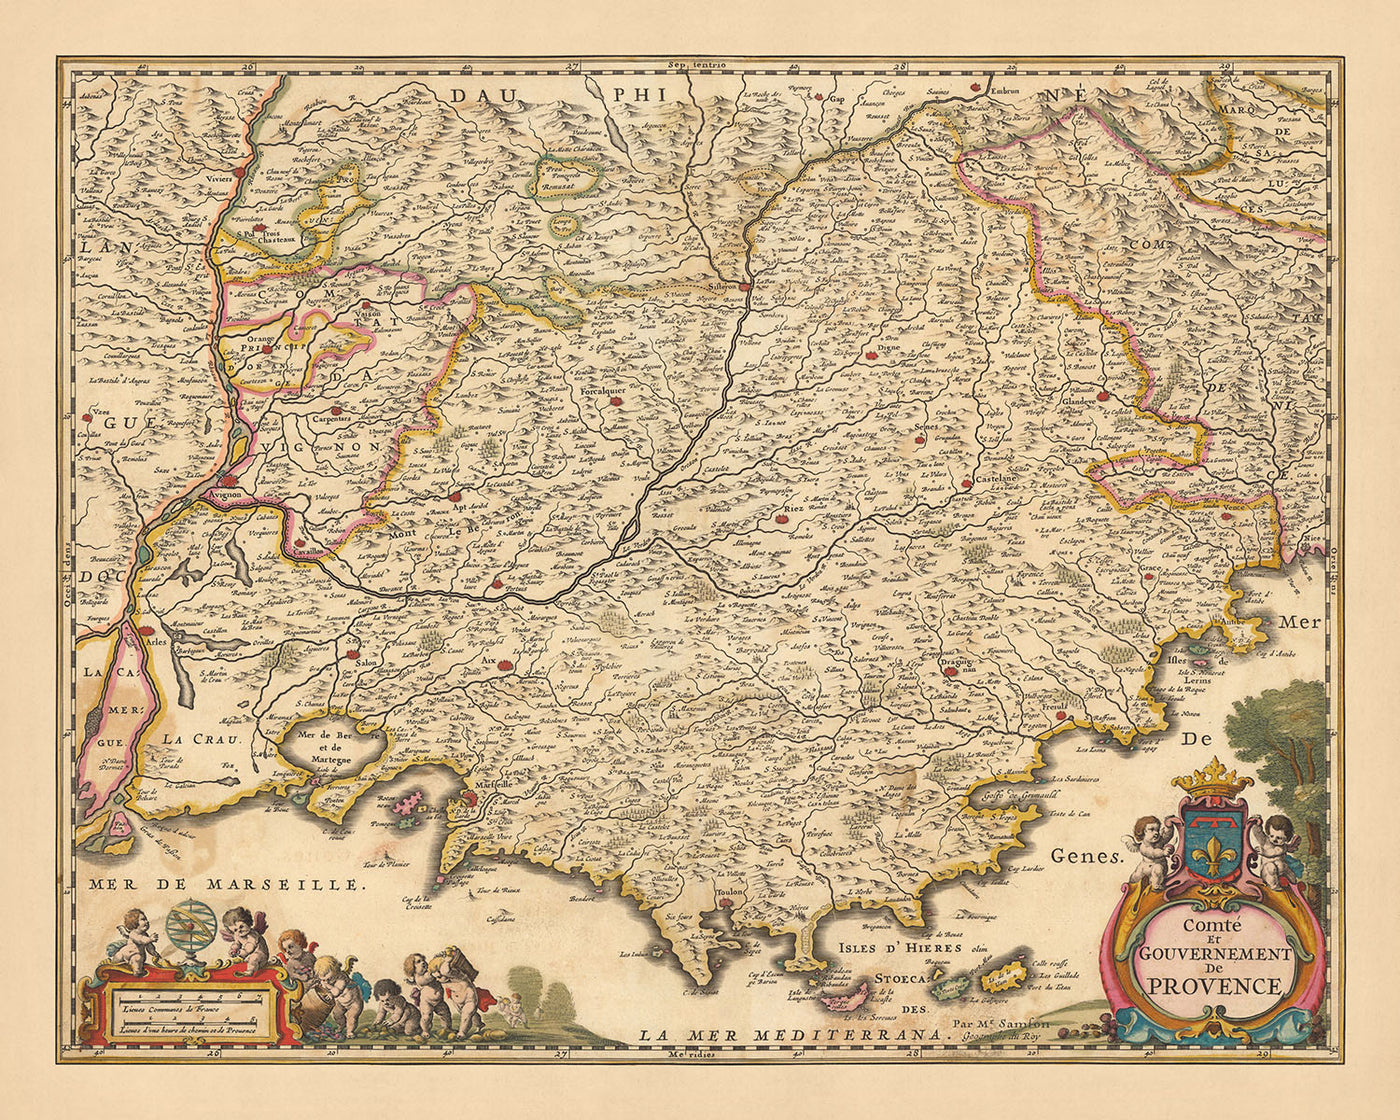 Alte Karte der Provence, Frankreich von Visscher, 1690: Marseille, Avignon, Cannes, Nizza, Parc national des Calanques